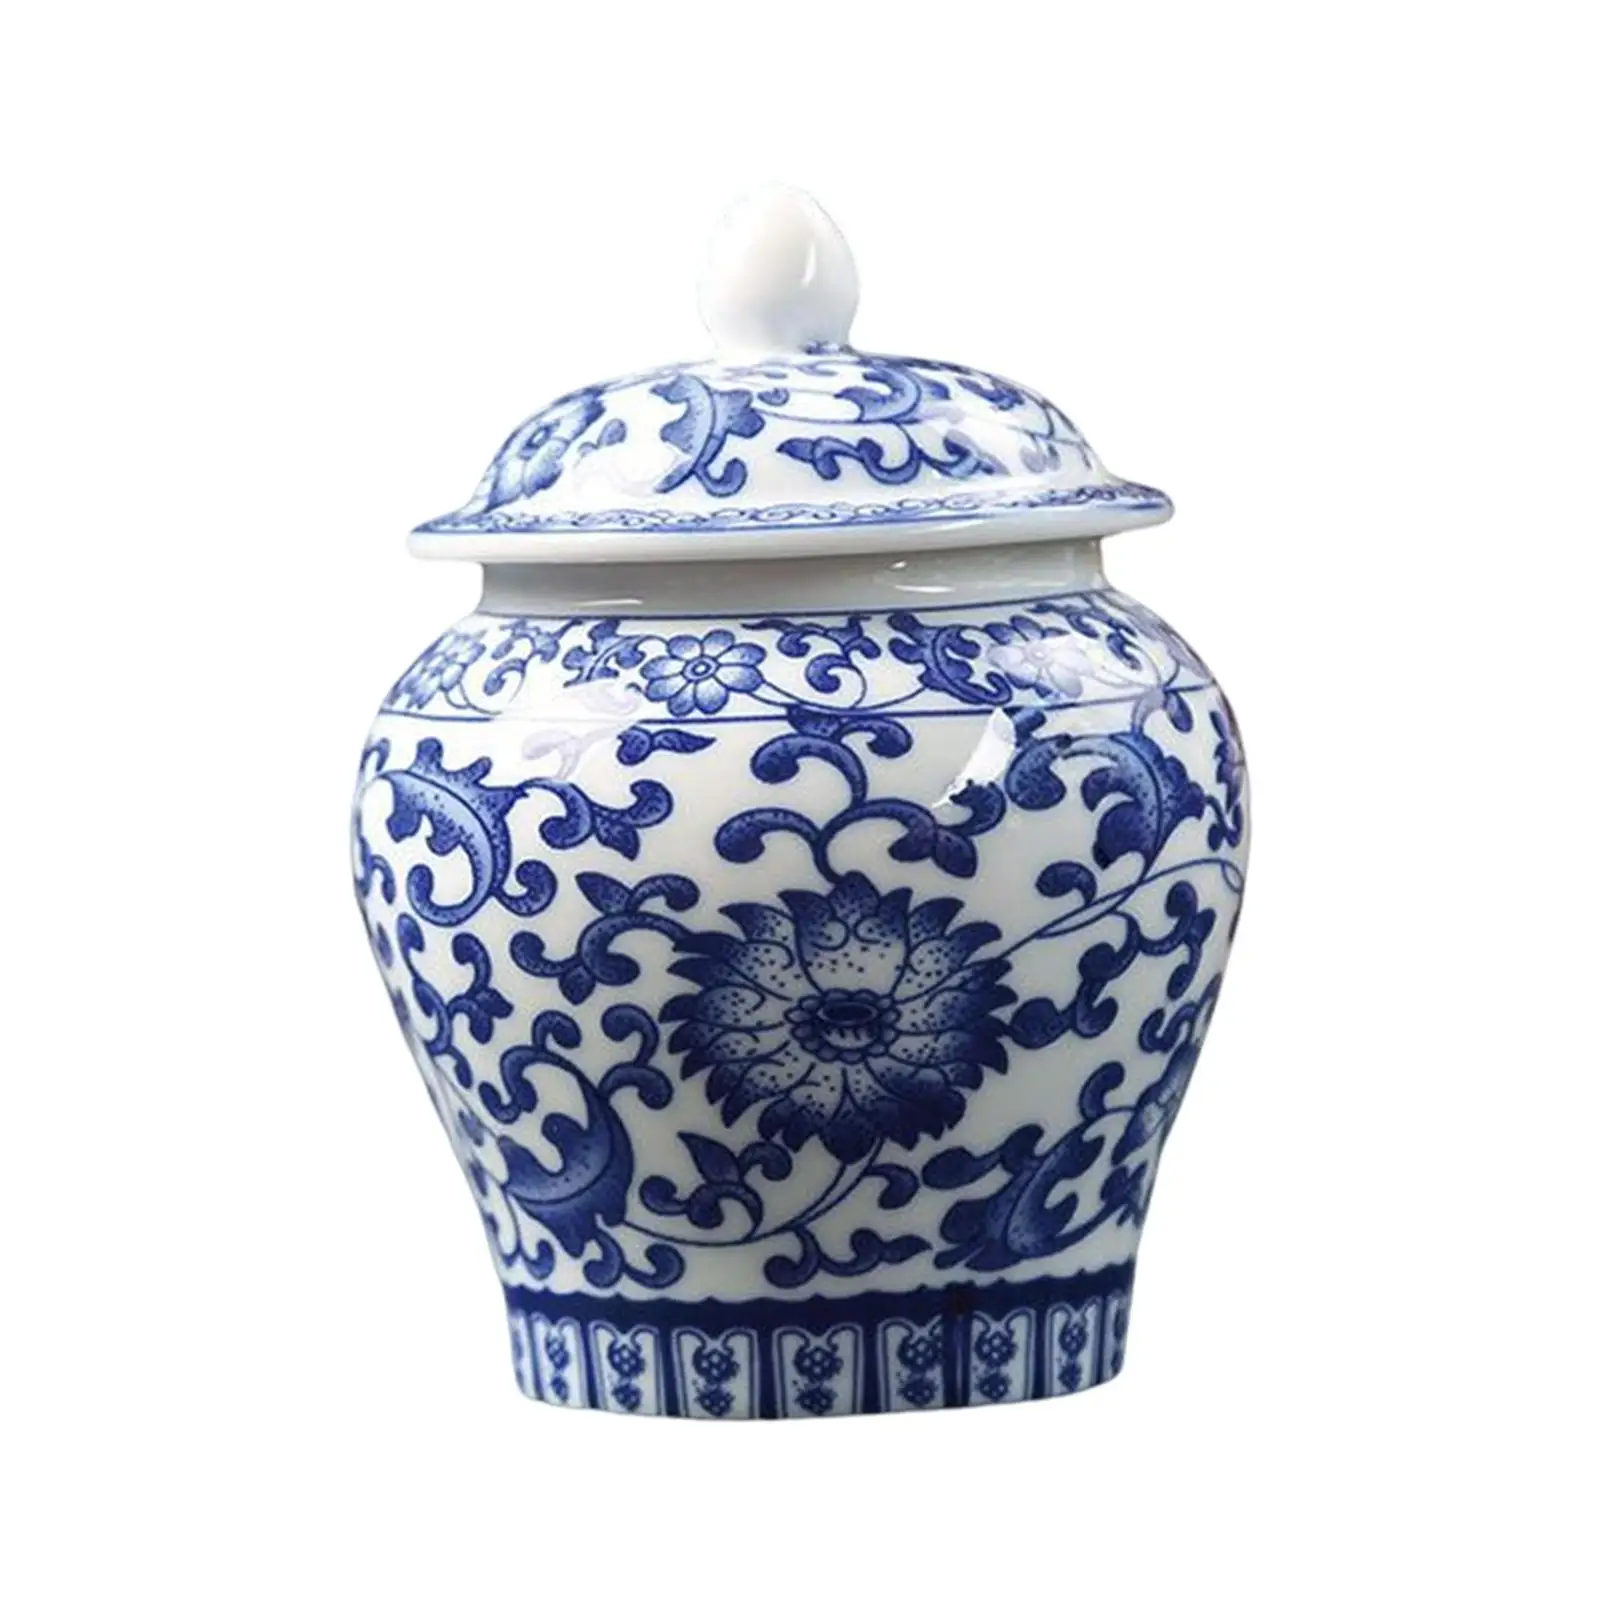 Blue White Porcelain Decorative Ginger Jar Tea Storage Jar with Lid